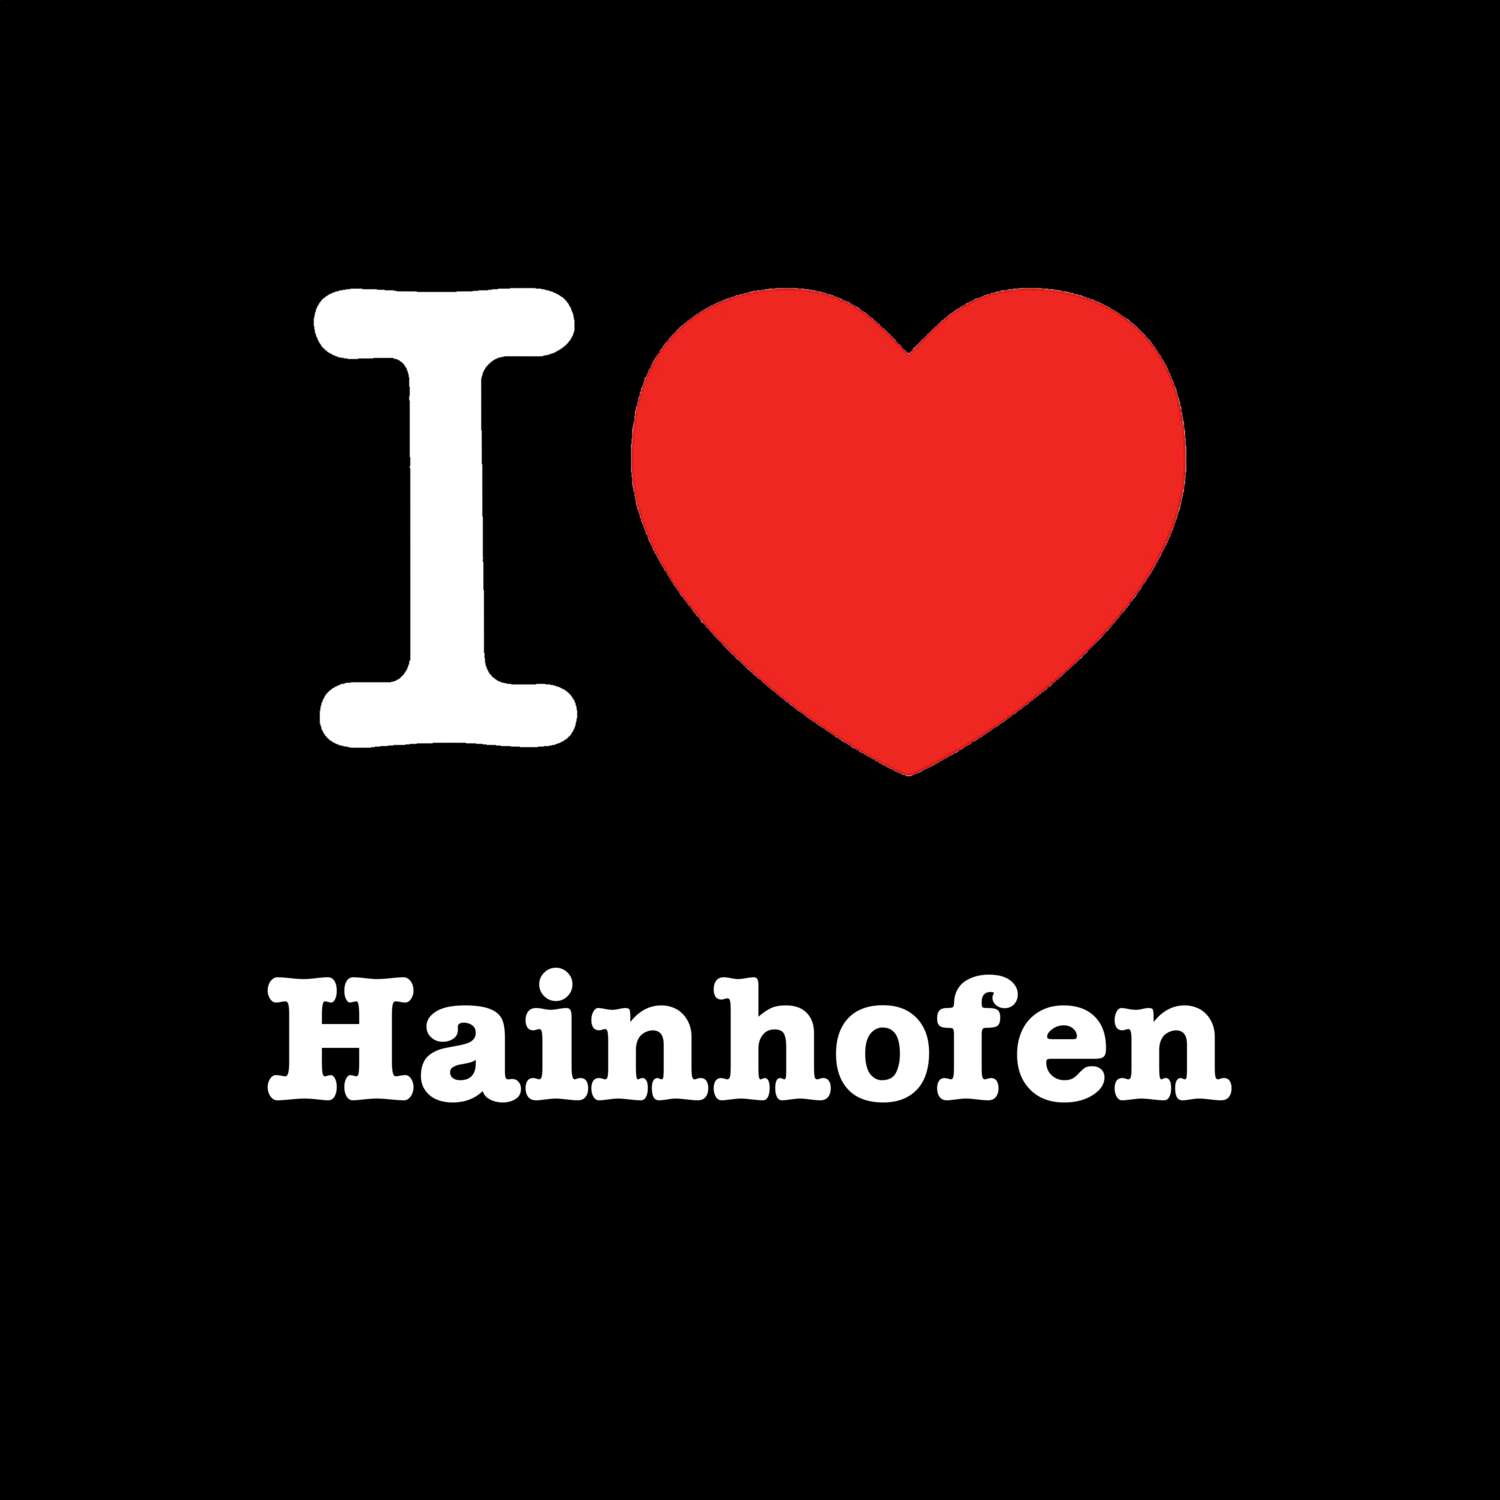 Hainhofen T-Shirt »I love«